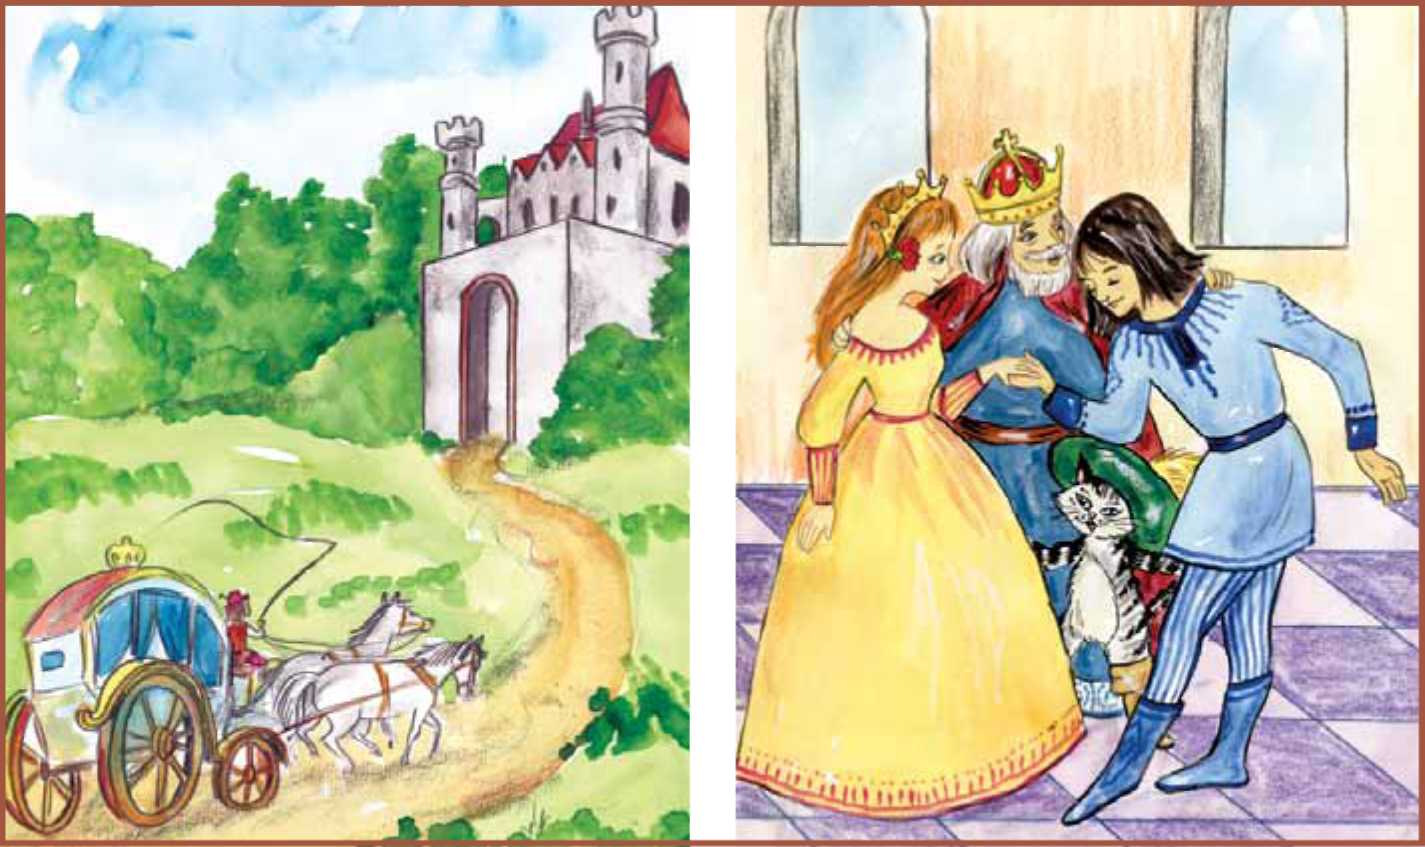 El gato dice al rey y a la princesa que el castillo y todo lo que lo rodea pertenecen al mismo marqués de Calabas.